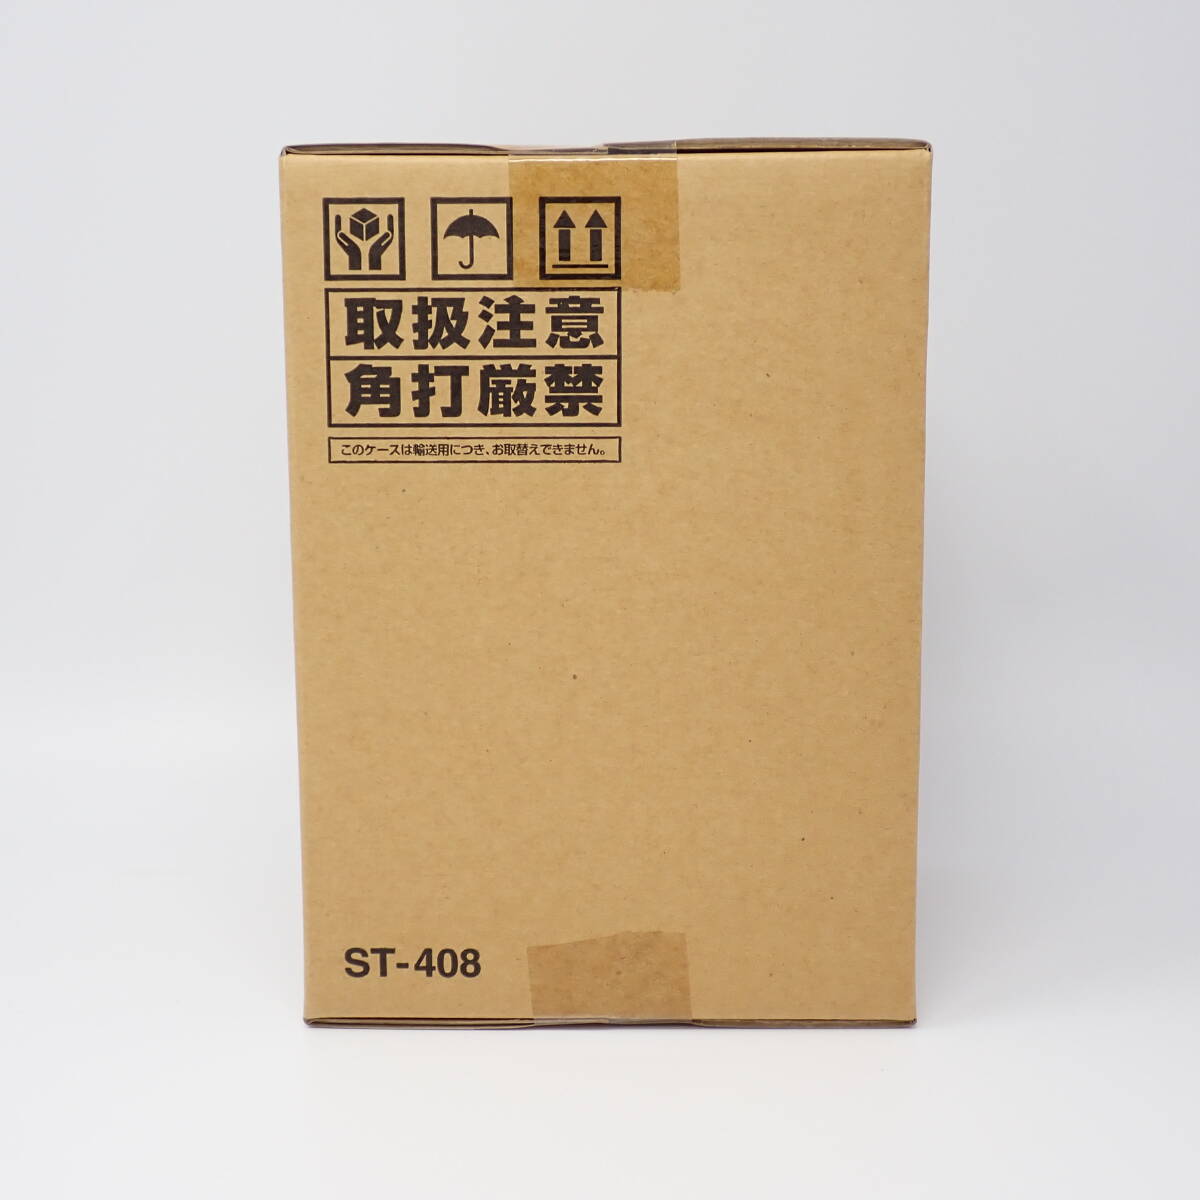 輸送箱未開封品 バンダイビジュアル 機動戦士ガンダム DVD-BOX 1 初回限定生産商品_画像4